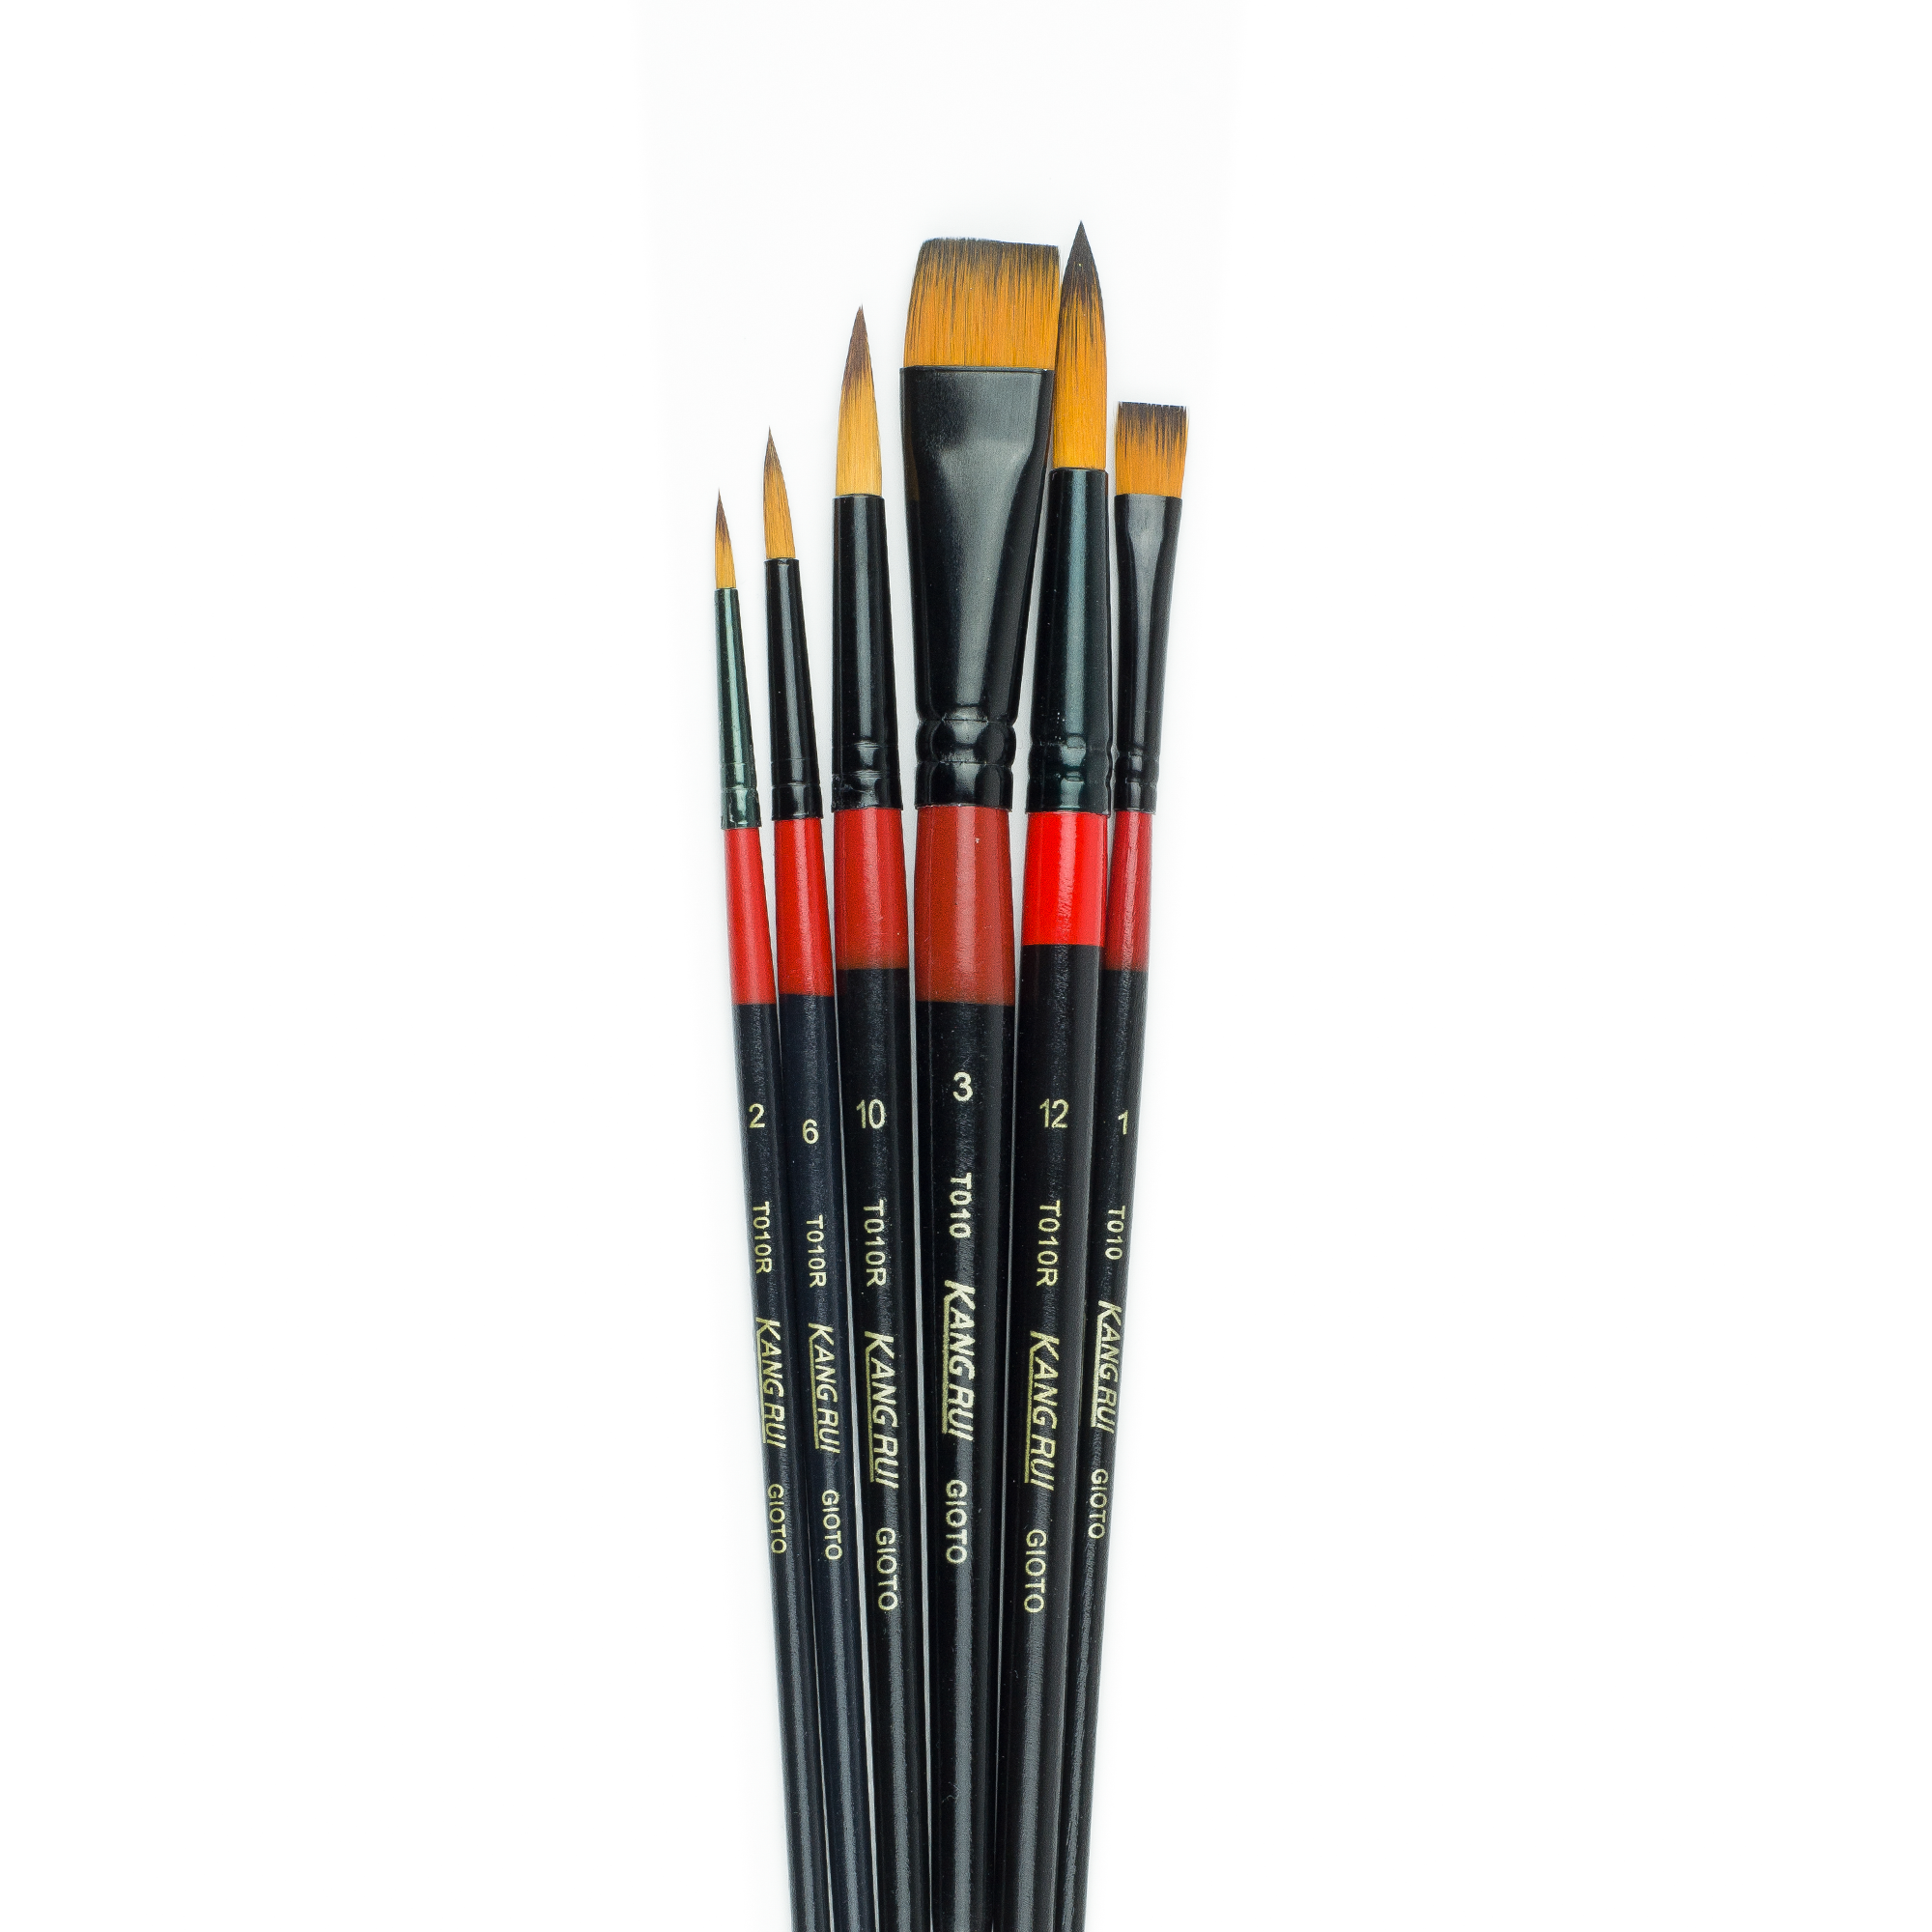 Juego de 6 unids/set de pinceles finos de nailon para dibujo, pincel de  nailon de alta calidad, sin pincel bifurcado - AliExpress